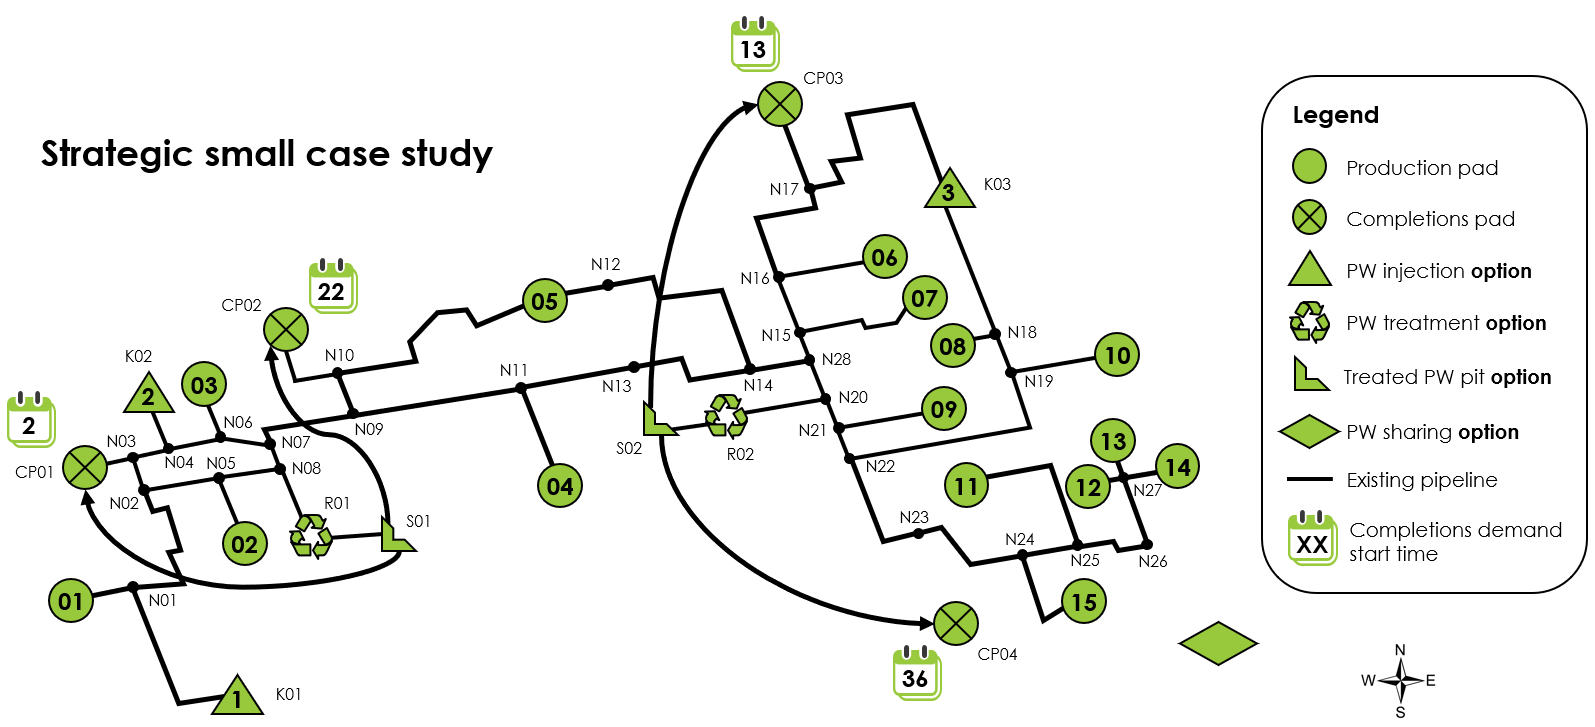 Strategic small case study network schematic